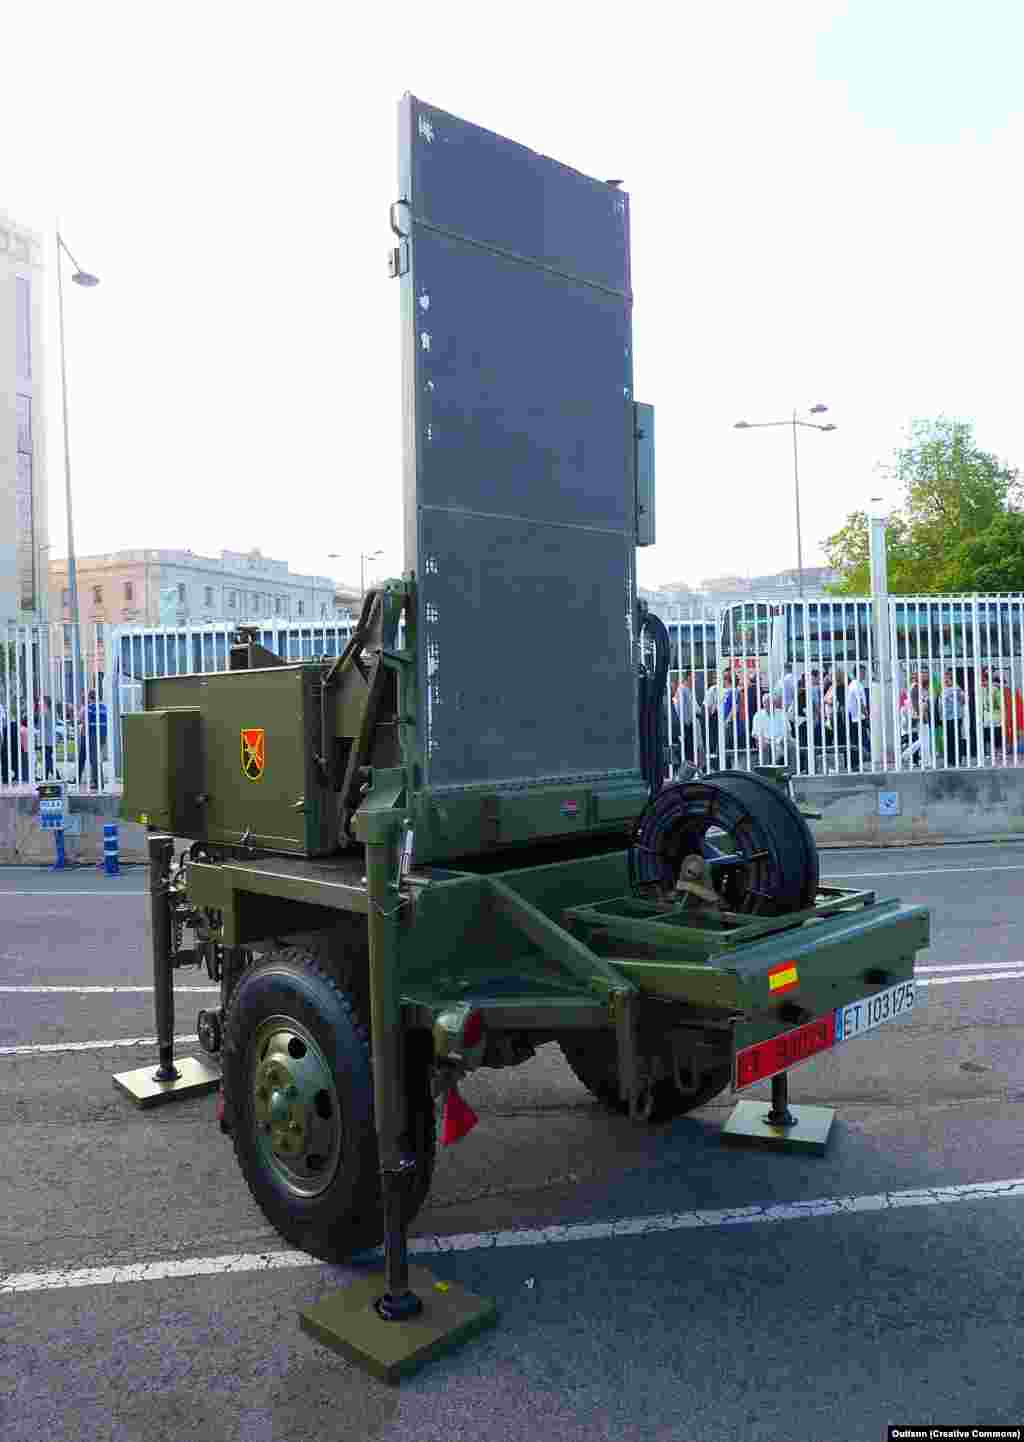 Десять артиллерийских радаров AN/TPQ-36&nbsp; &nbsp; Радар используется для обнаружения приближающейся артиллерийской техники и отслеживает траекторию снаряда, чтобы вычислить, откуда он был выпущен&nbsp; &nbsp;